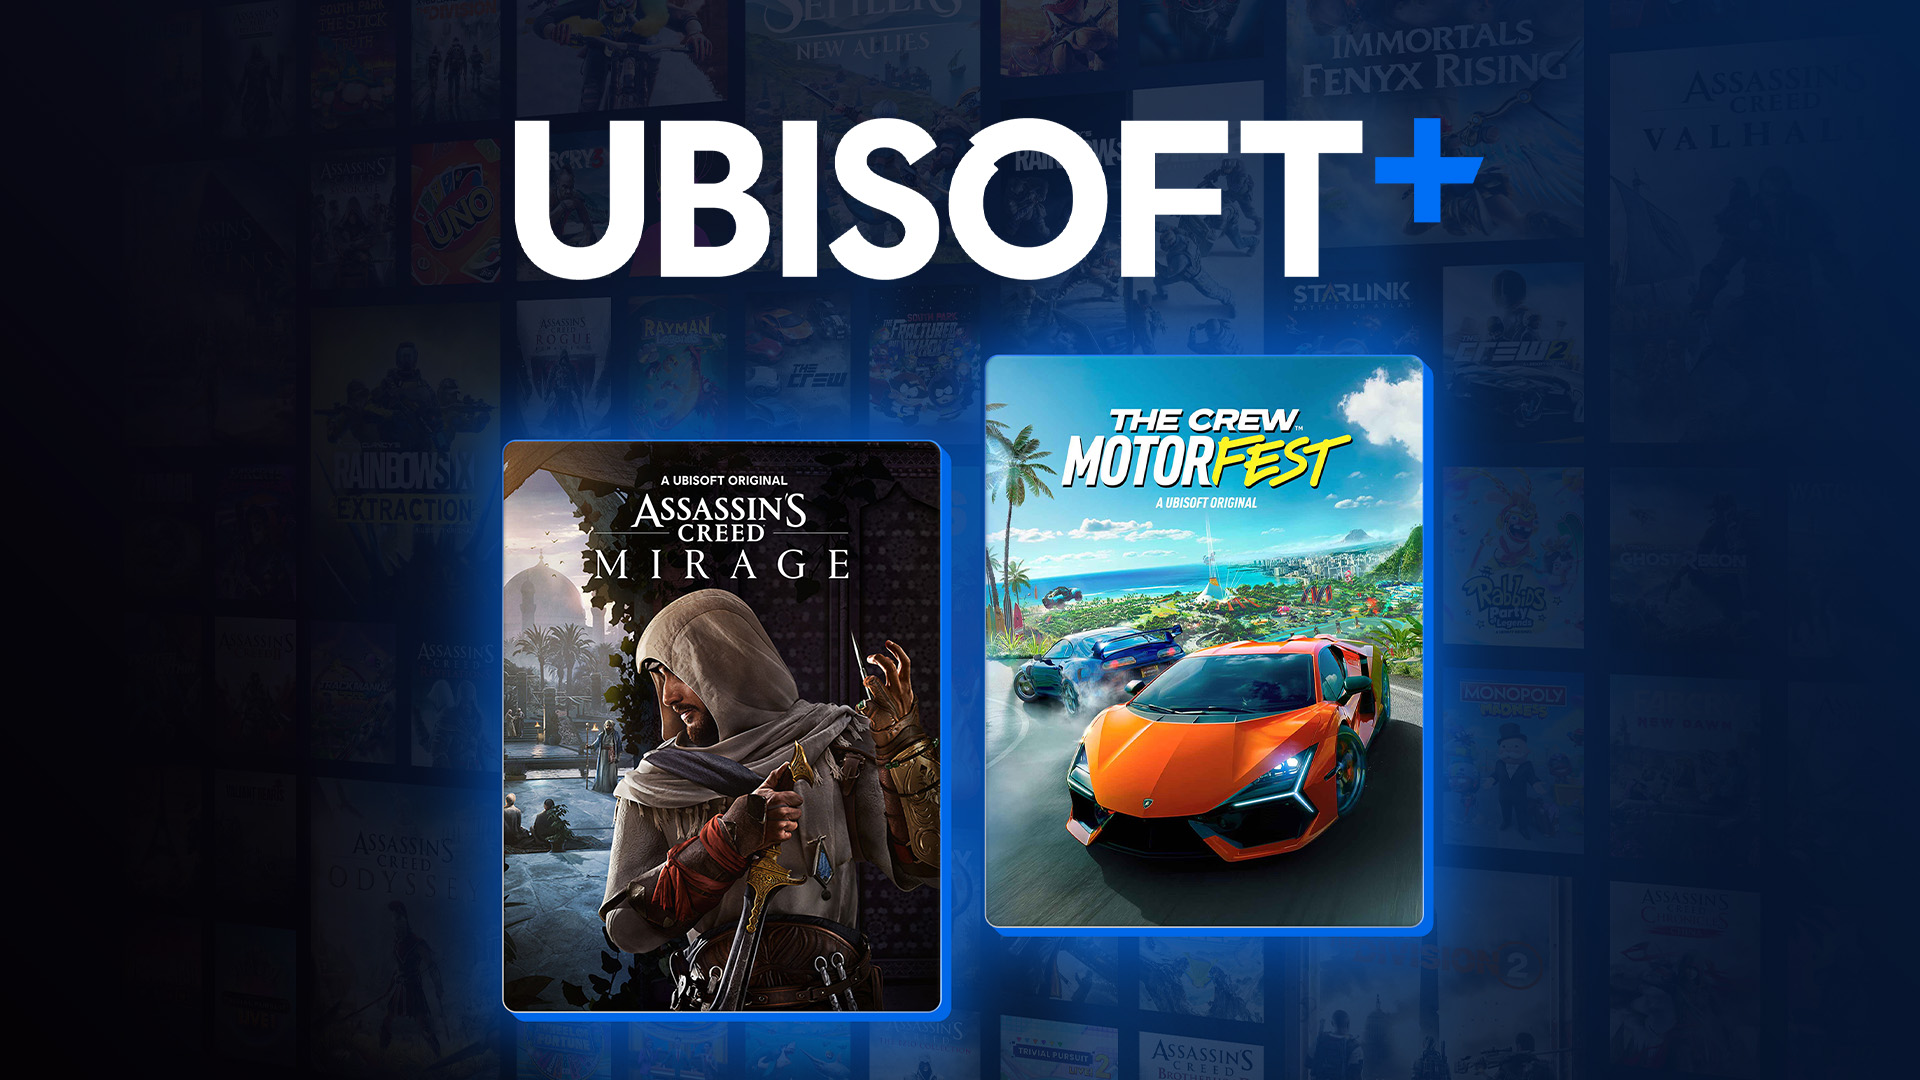 Ubisoft Plus: Ubisoft oferece um mês grátis para todos